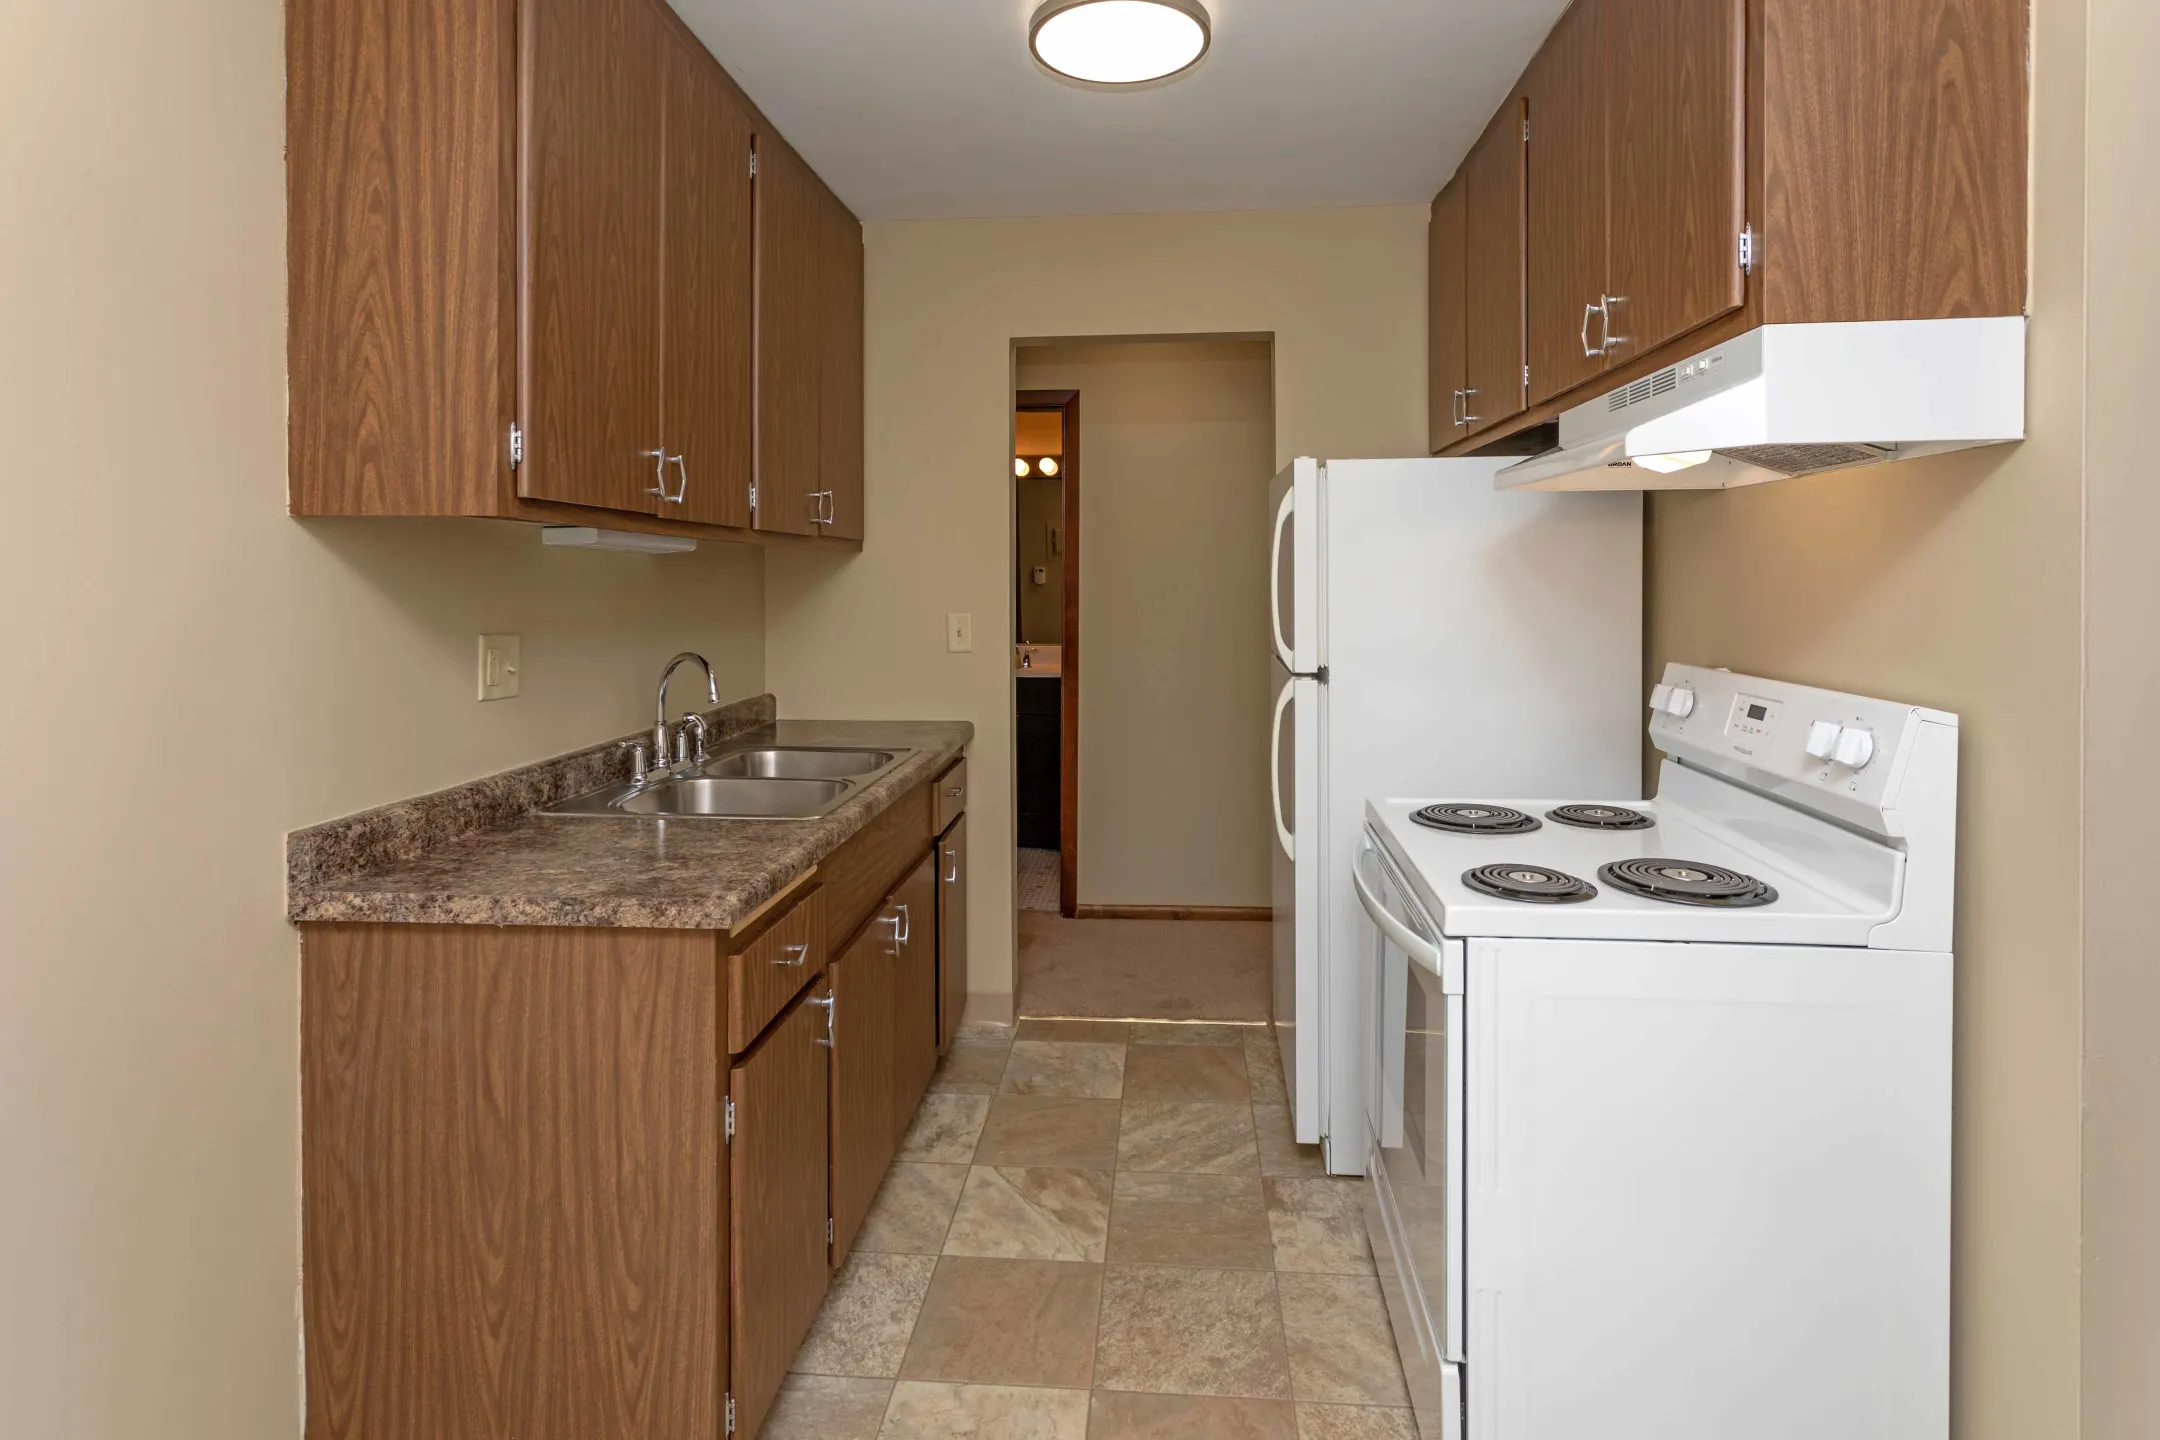 Kitchen - Cottage Terrace Apartments - Saint Paul, MN